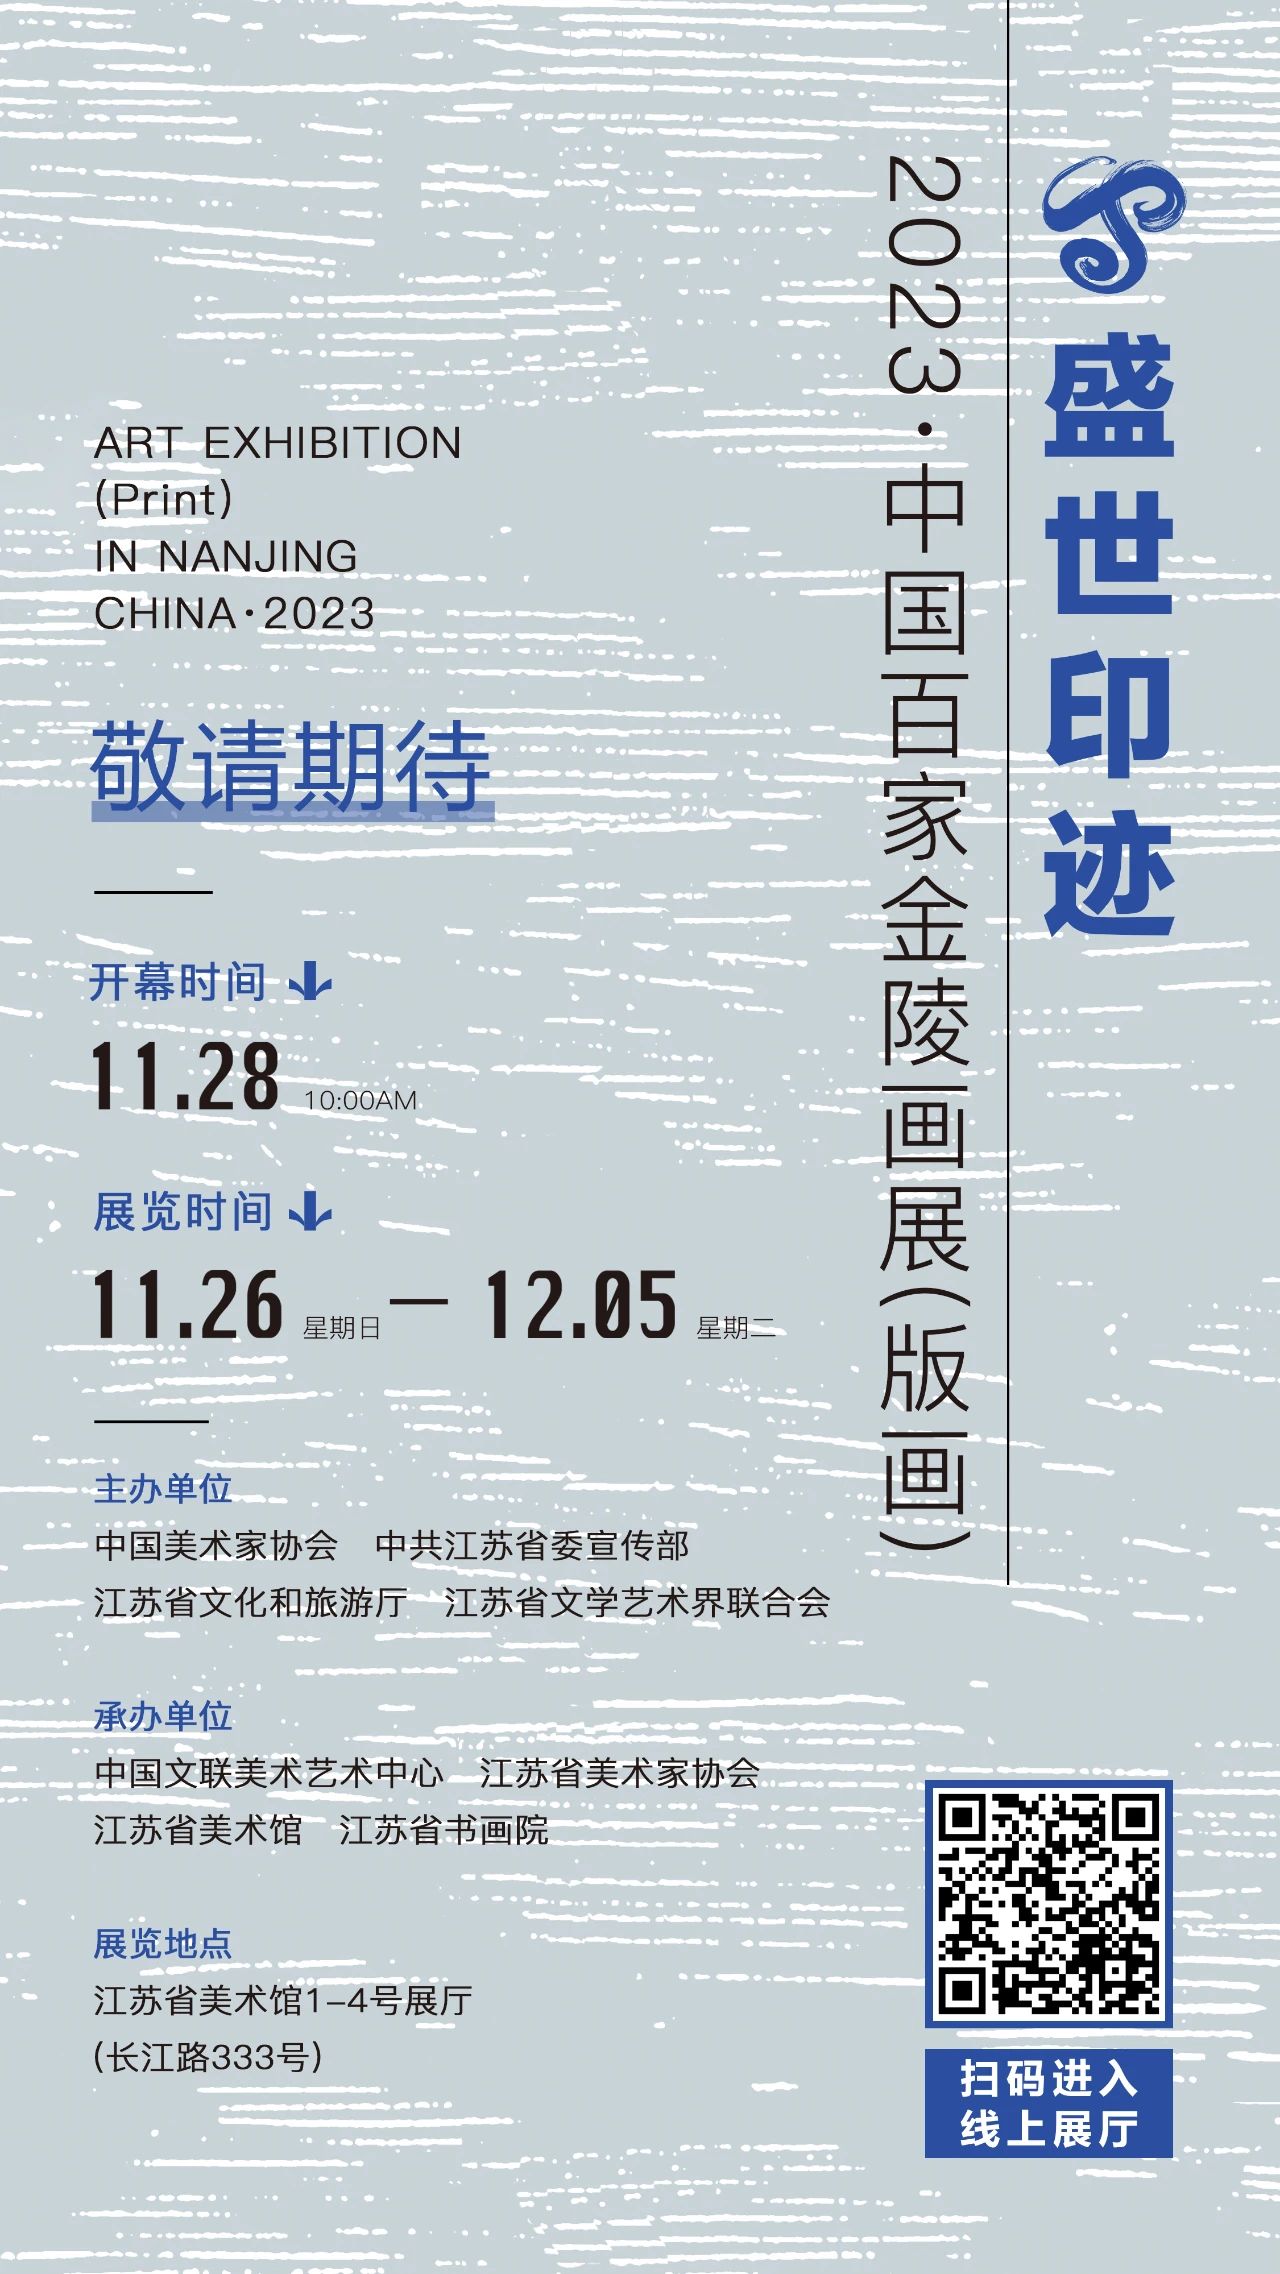 “盛世印迹——2023·中国百家金陵画展（版画）”展览预告